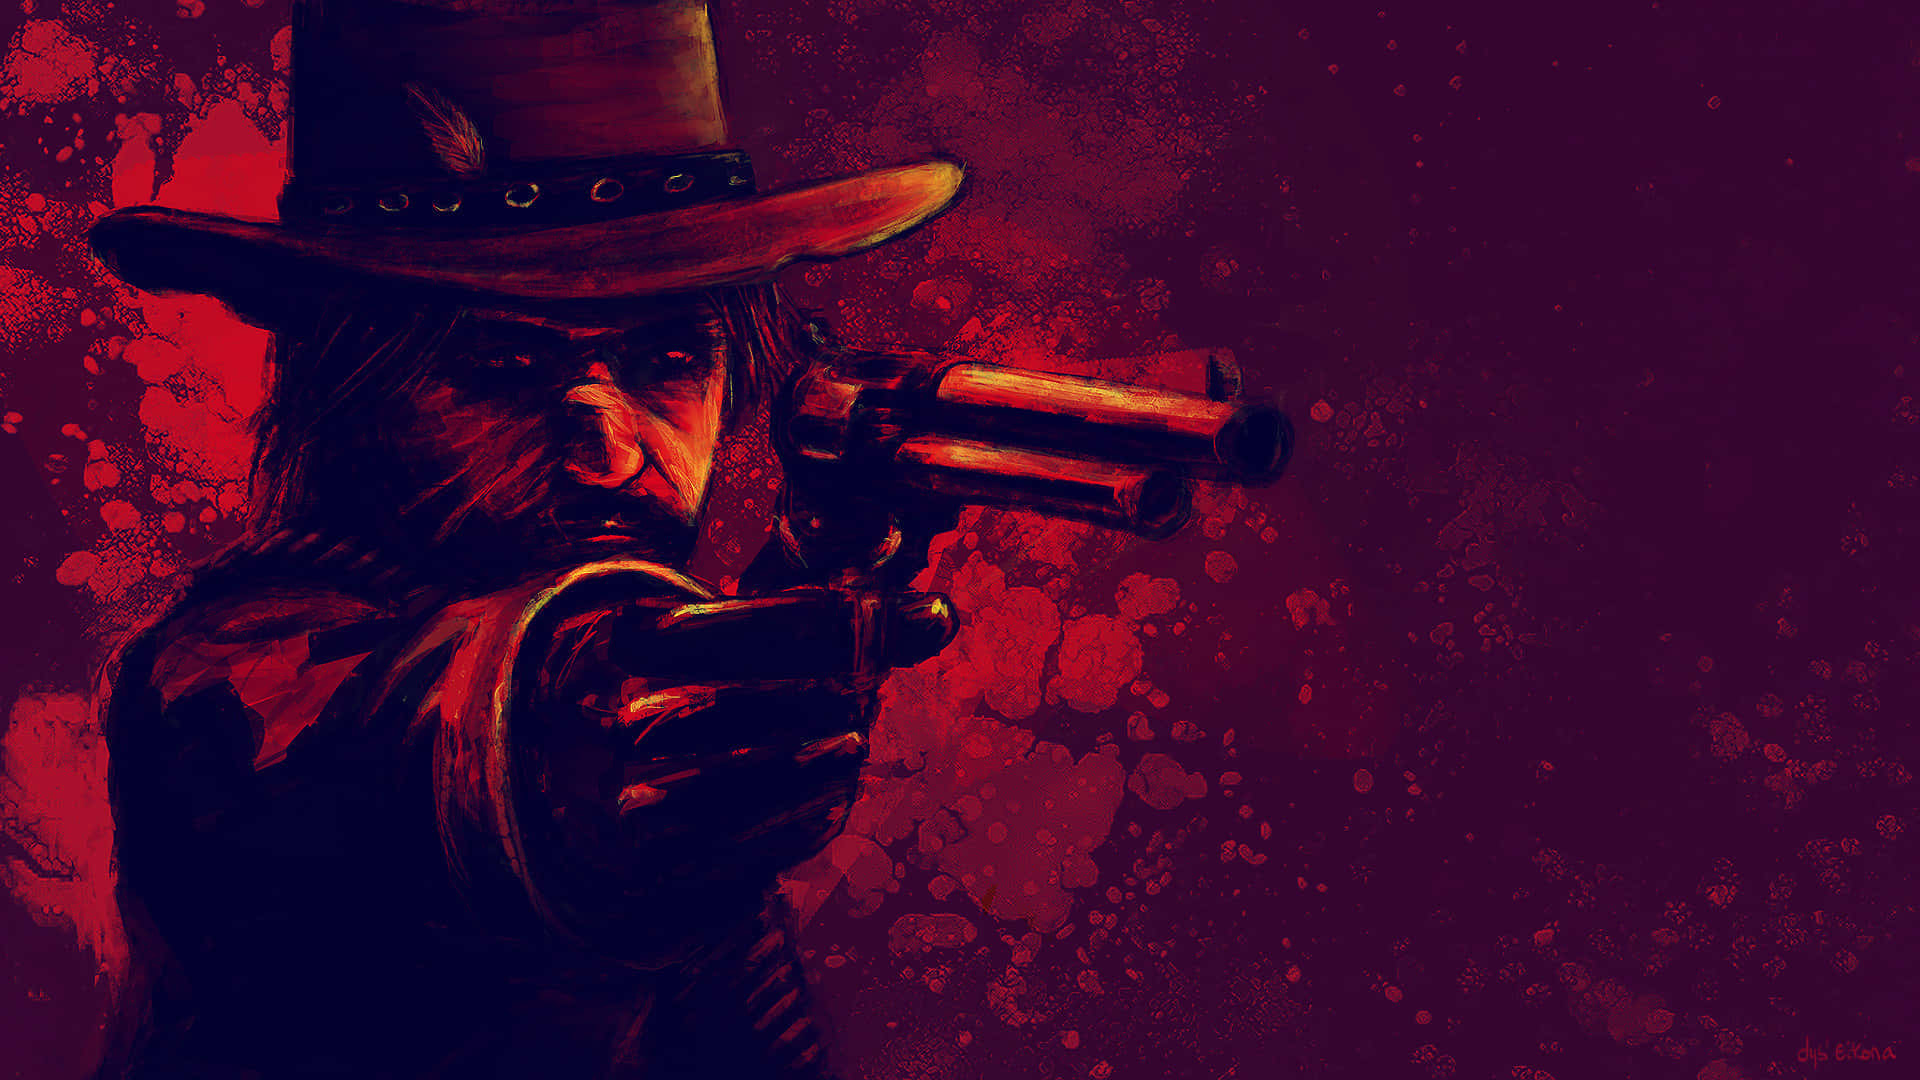 Sheriffde Red Redemption 1920x1080 Fondo De Red Dead Redemption 2 En Rojo